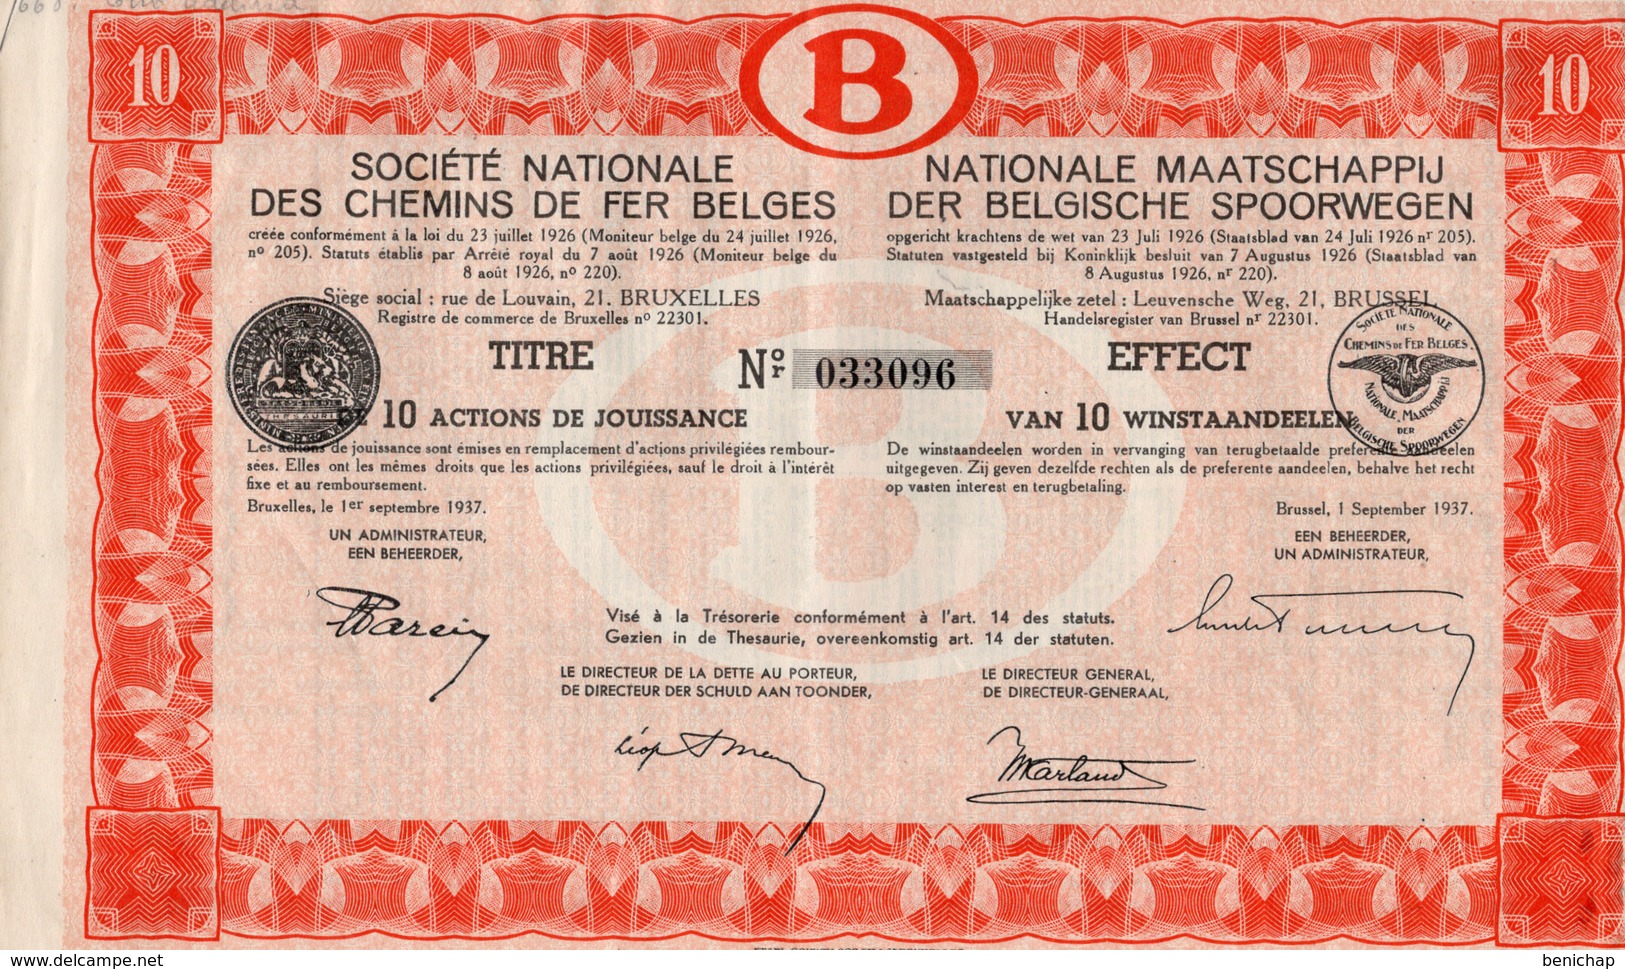 Titre De Bourse NMBS - SNCB - De 10 Actions De Jouissance - Van 10 Winstaandeelen - 1937. - Railway & Tramway